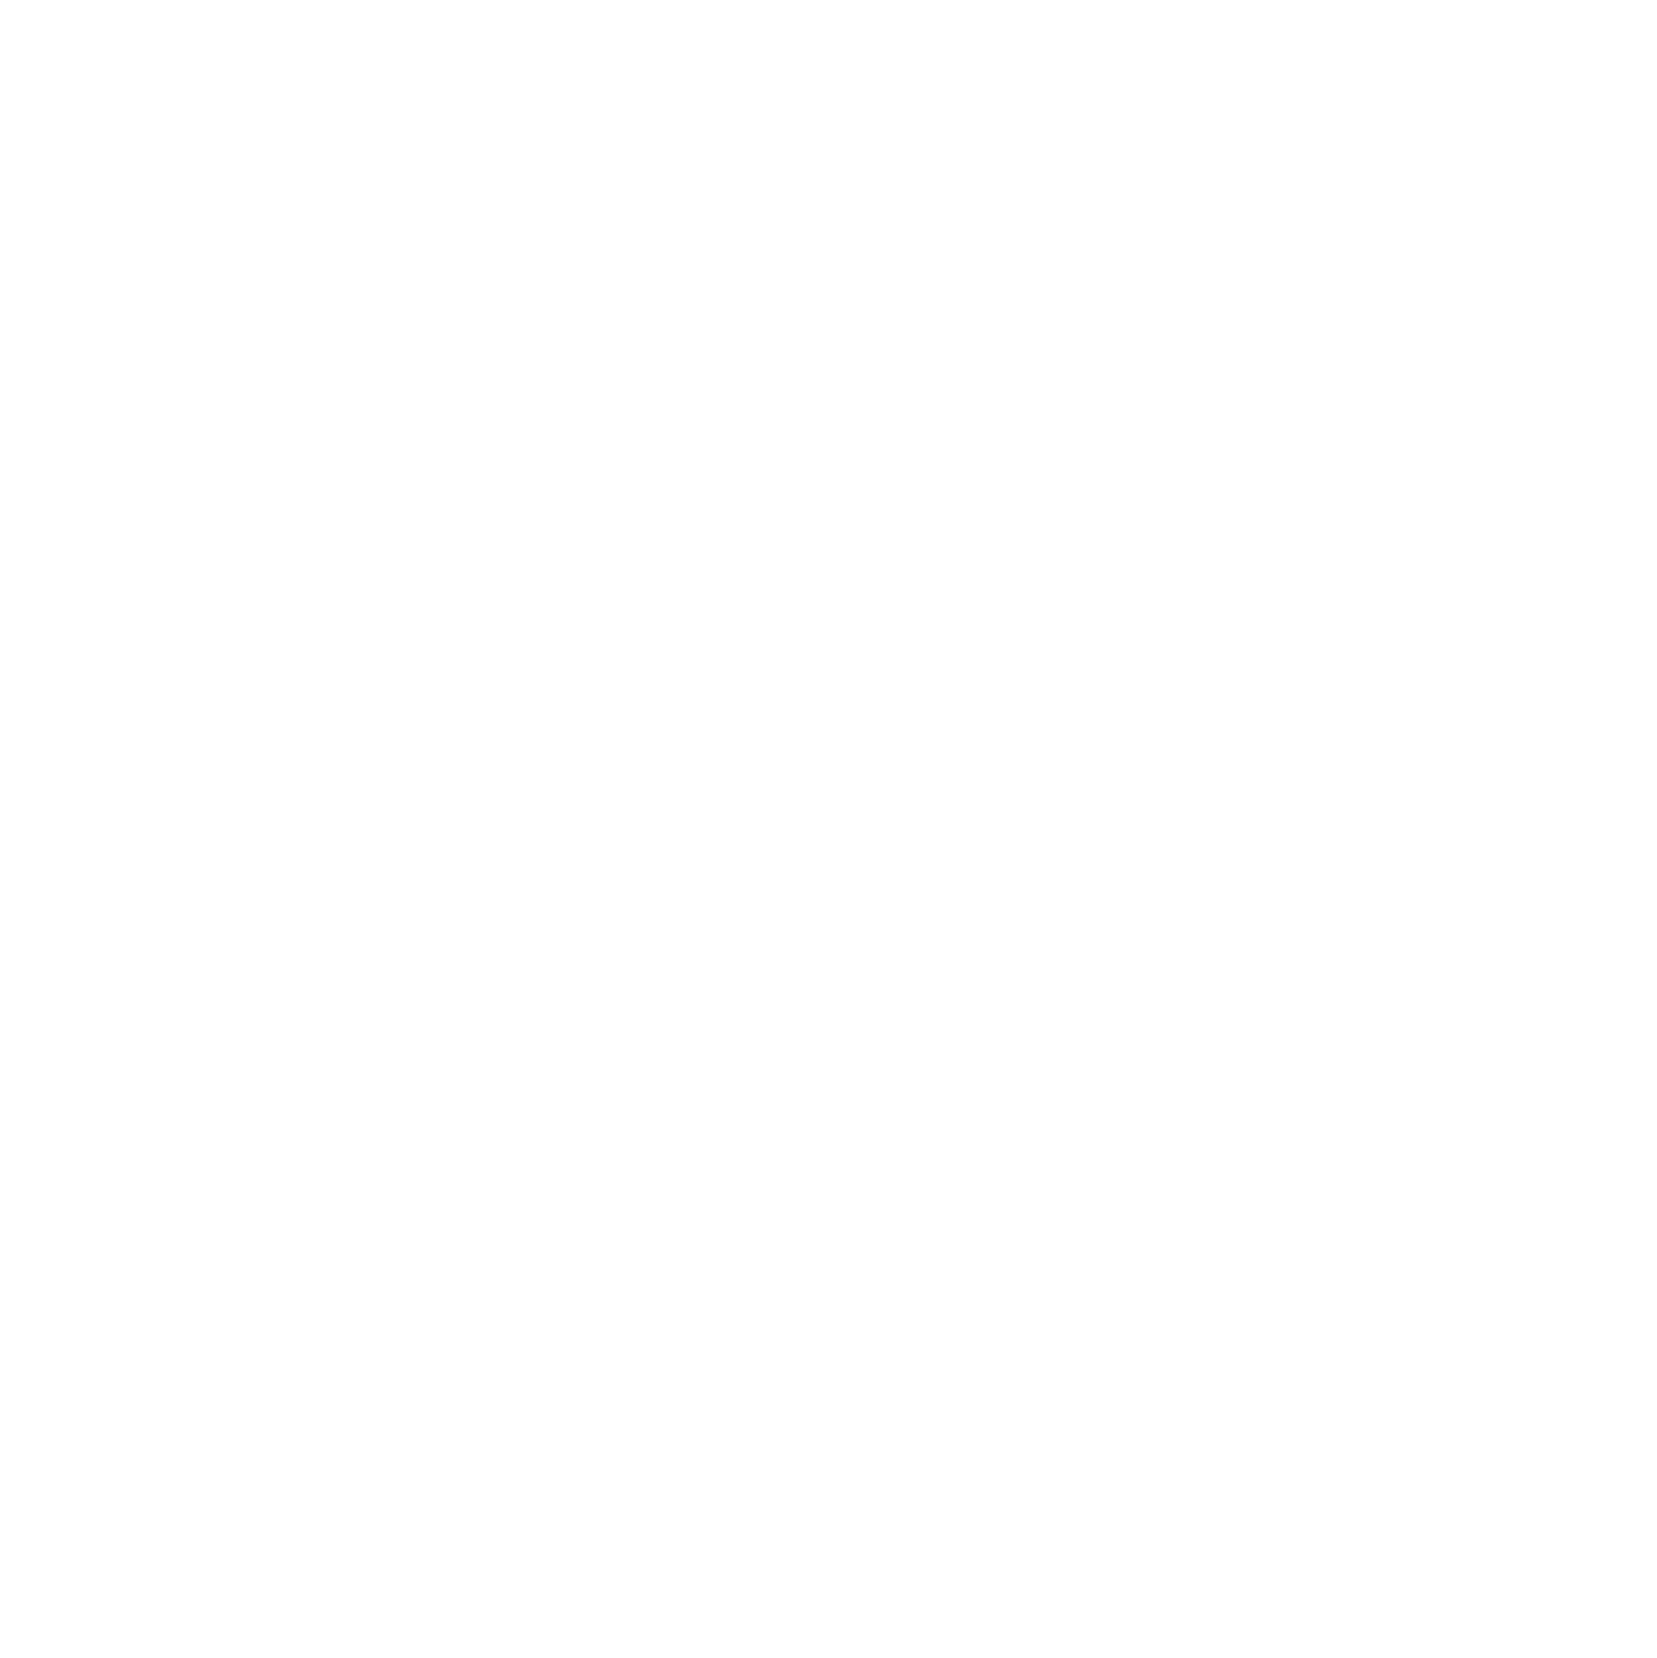 Willow Tree Community Primary School